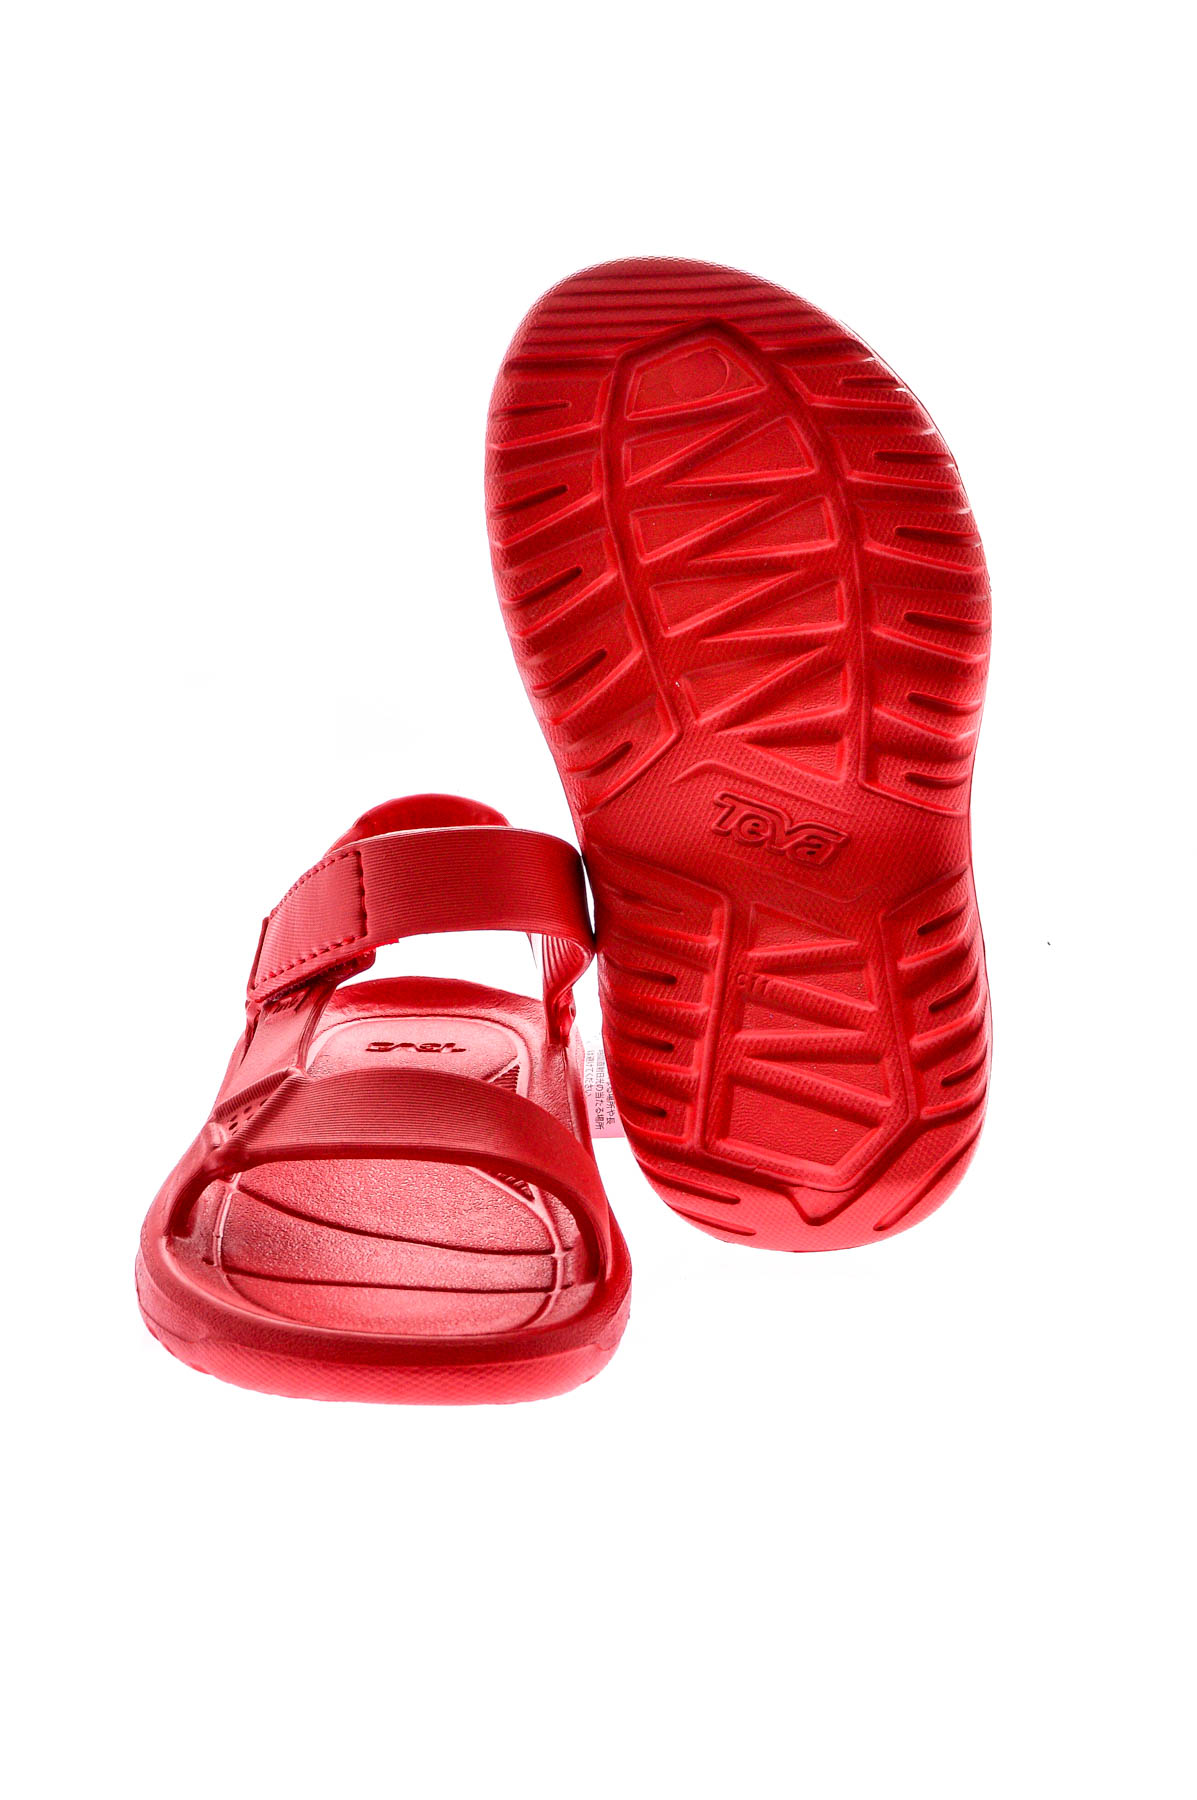 Sandale pentru copil - Teva - 3